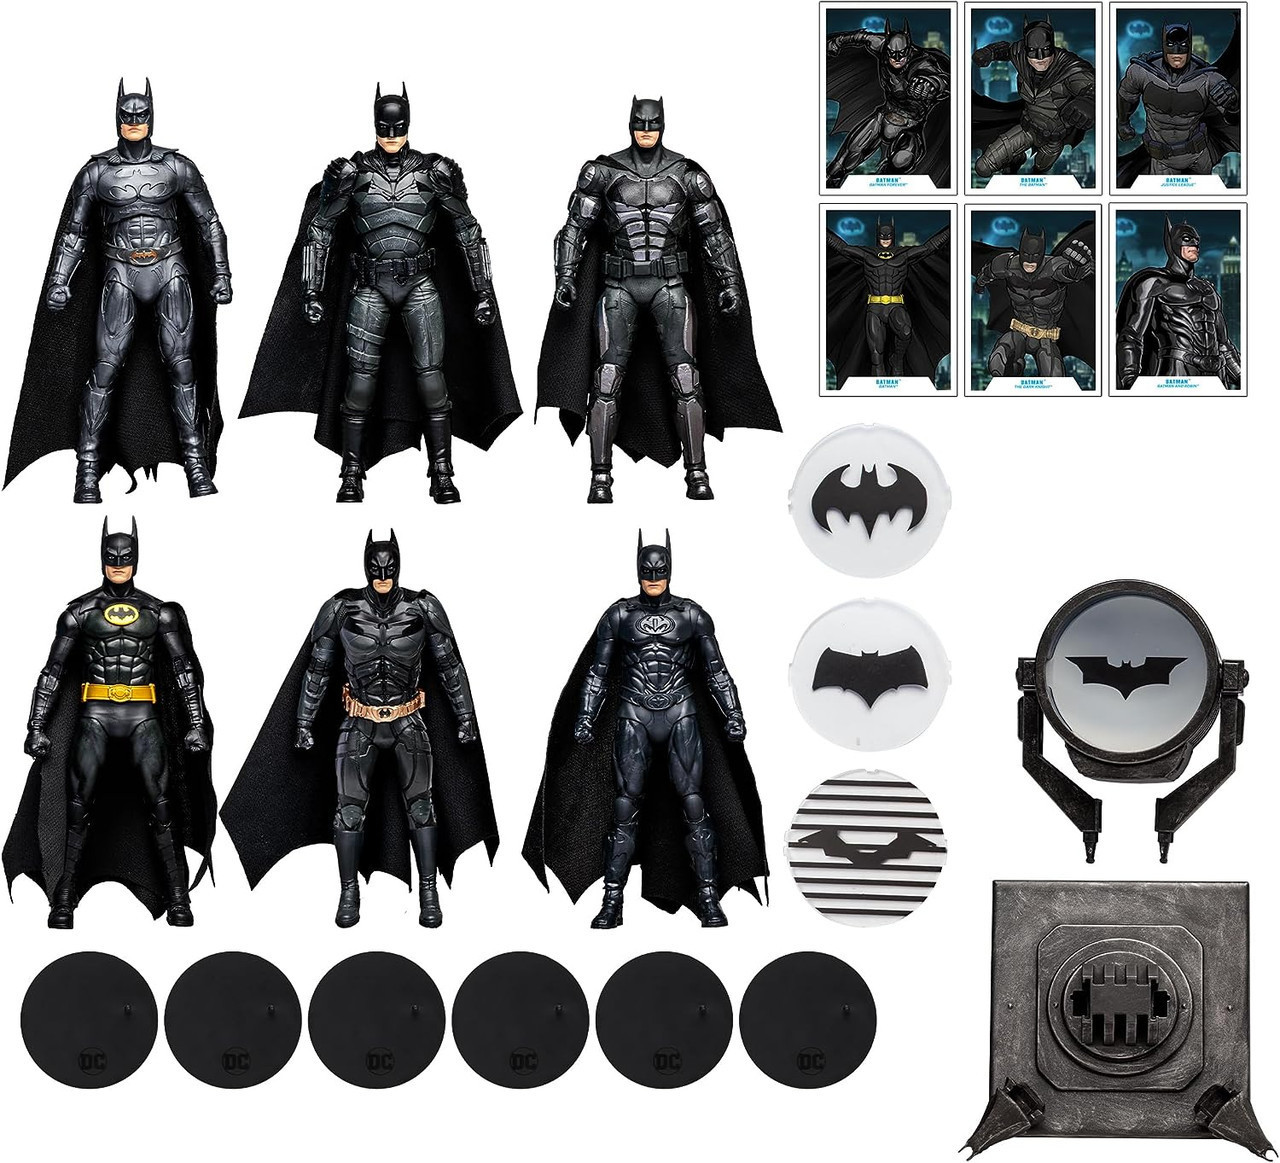 DC Multiverse Multipack - WB100 - Batman 6 Action Figure Set - We